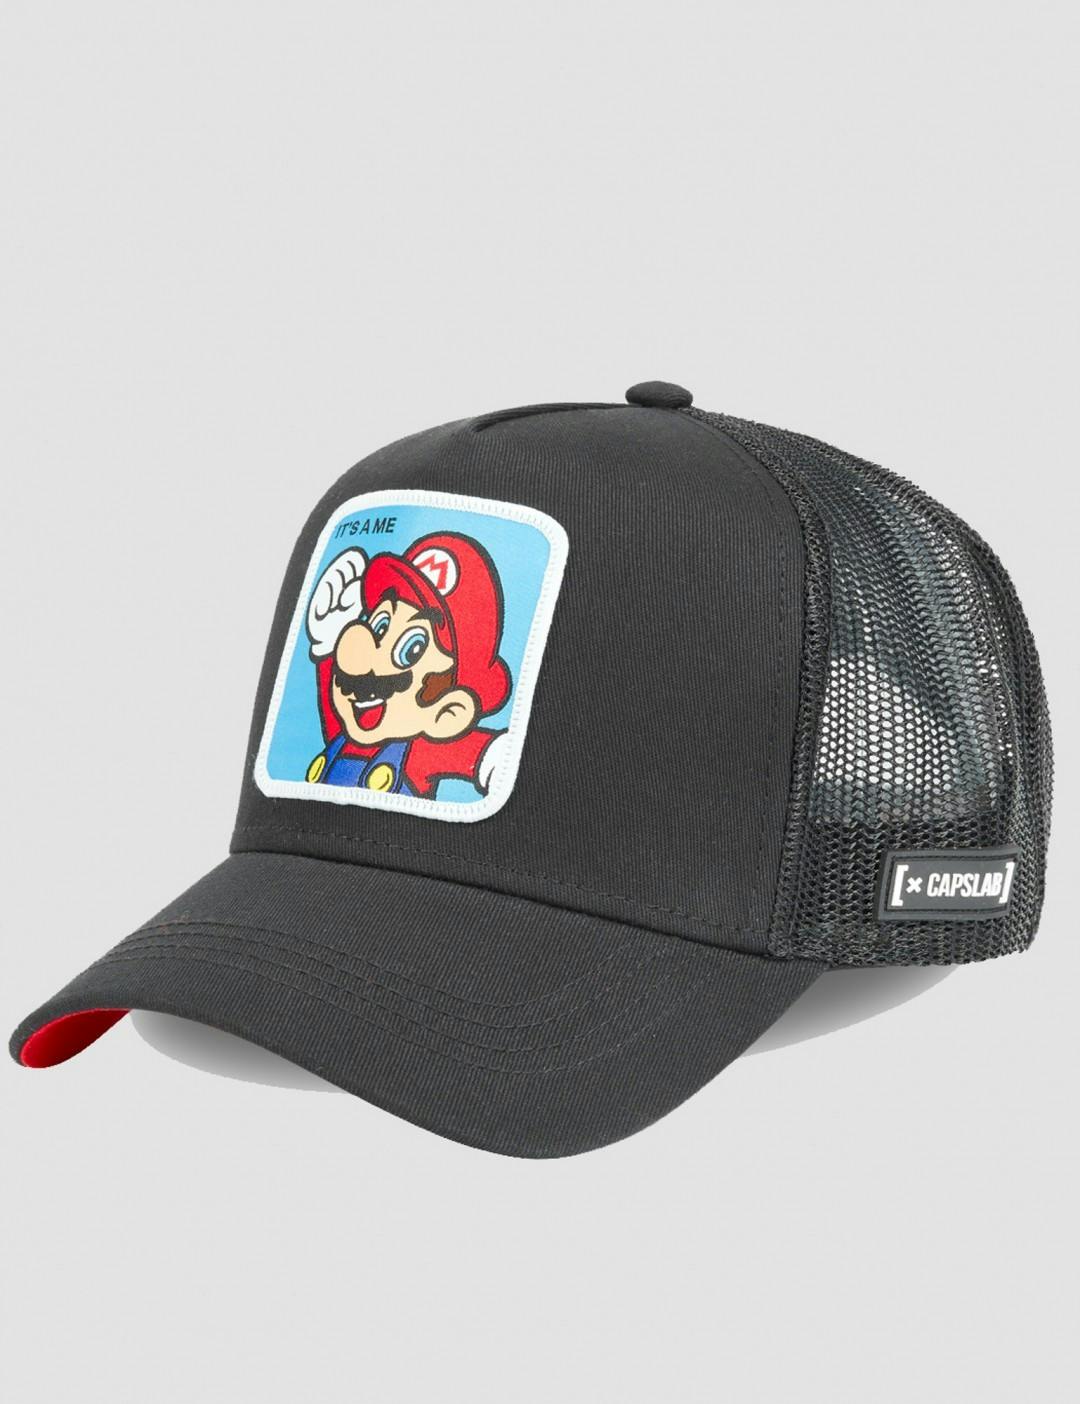 Super Mario Bros Classic Trucker